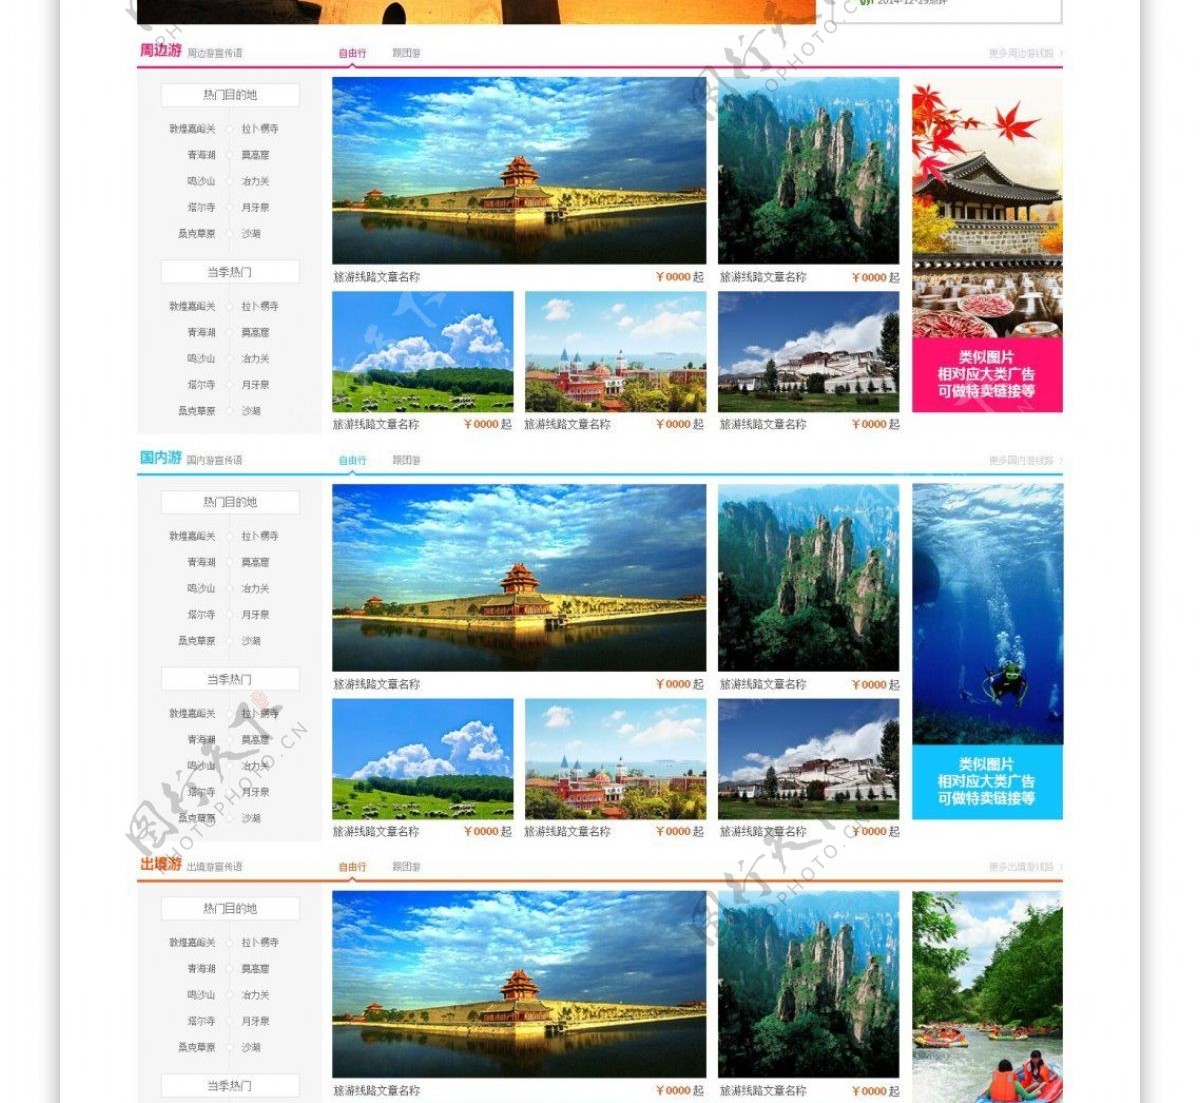 旅游门户网站设计图片